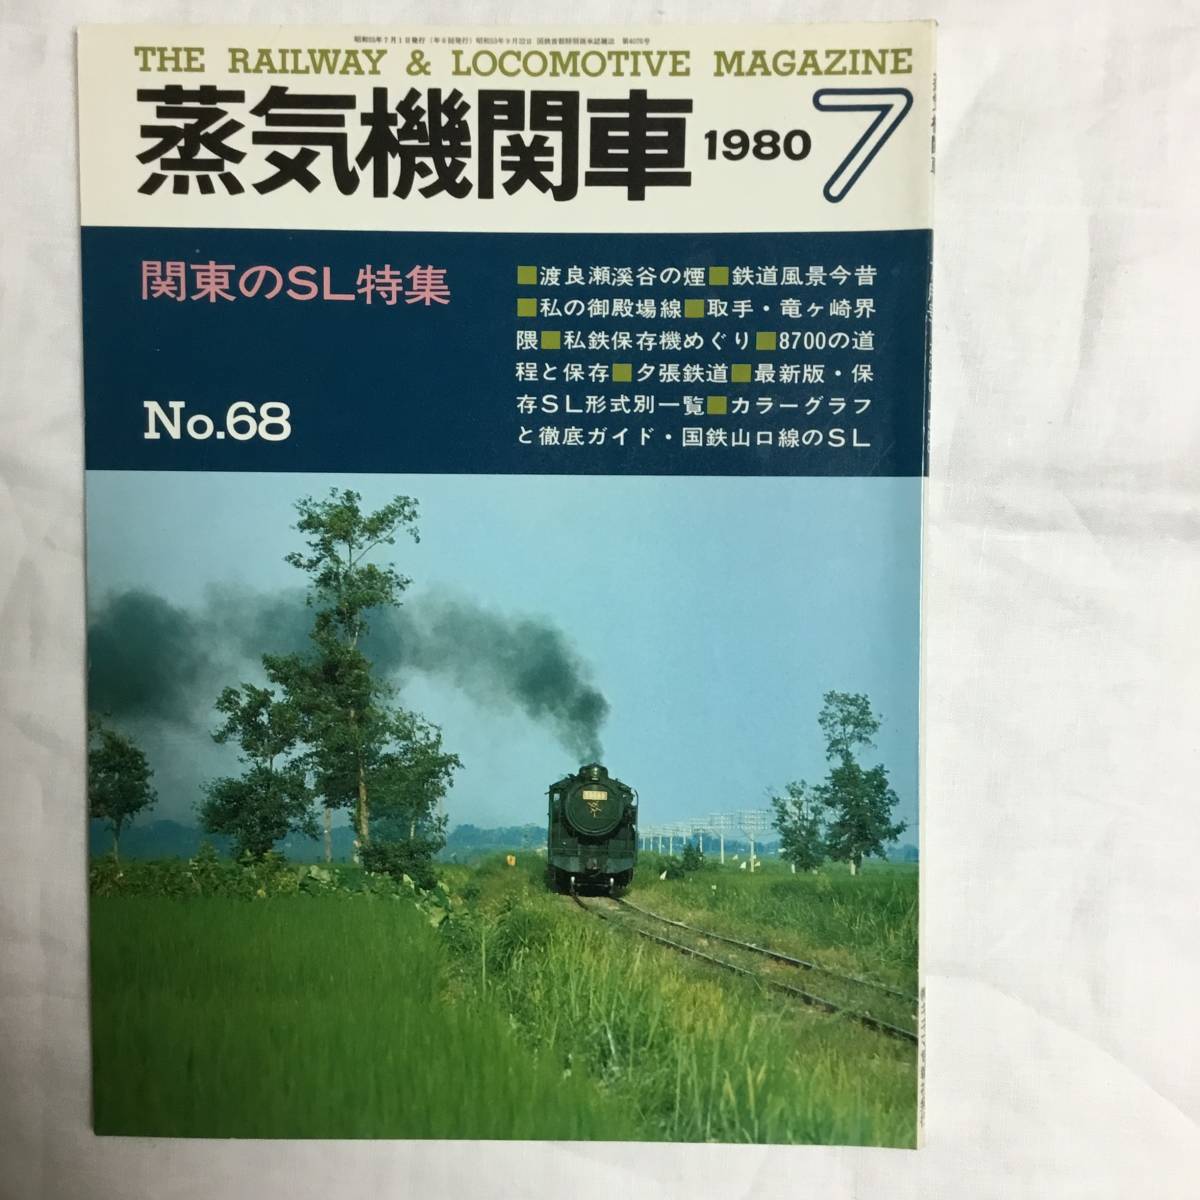 キネマ旬報社 蒸気機関車 1980年 7月号 No.68 関東のSLの画像1